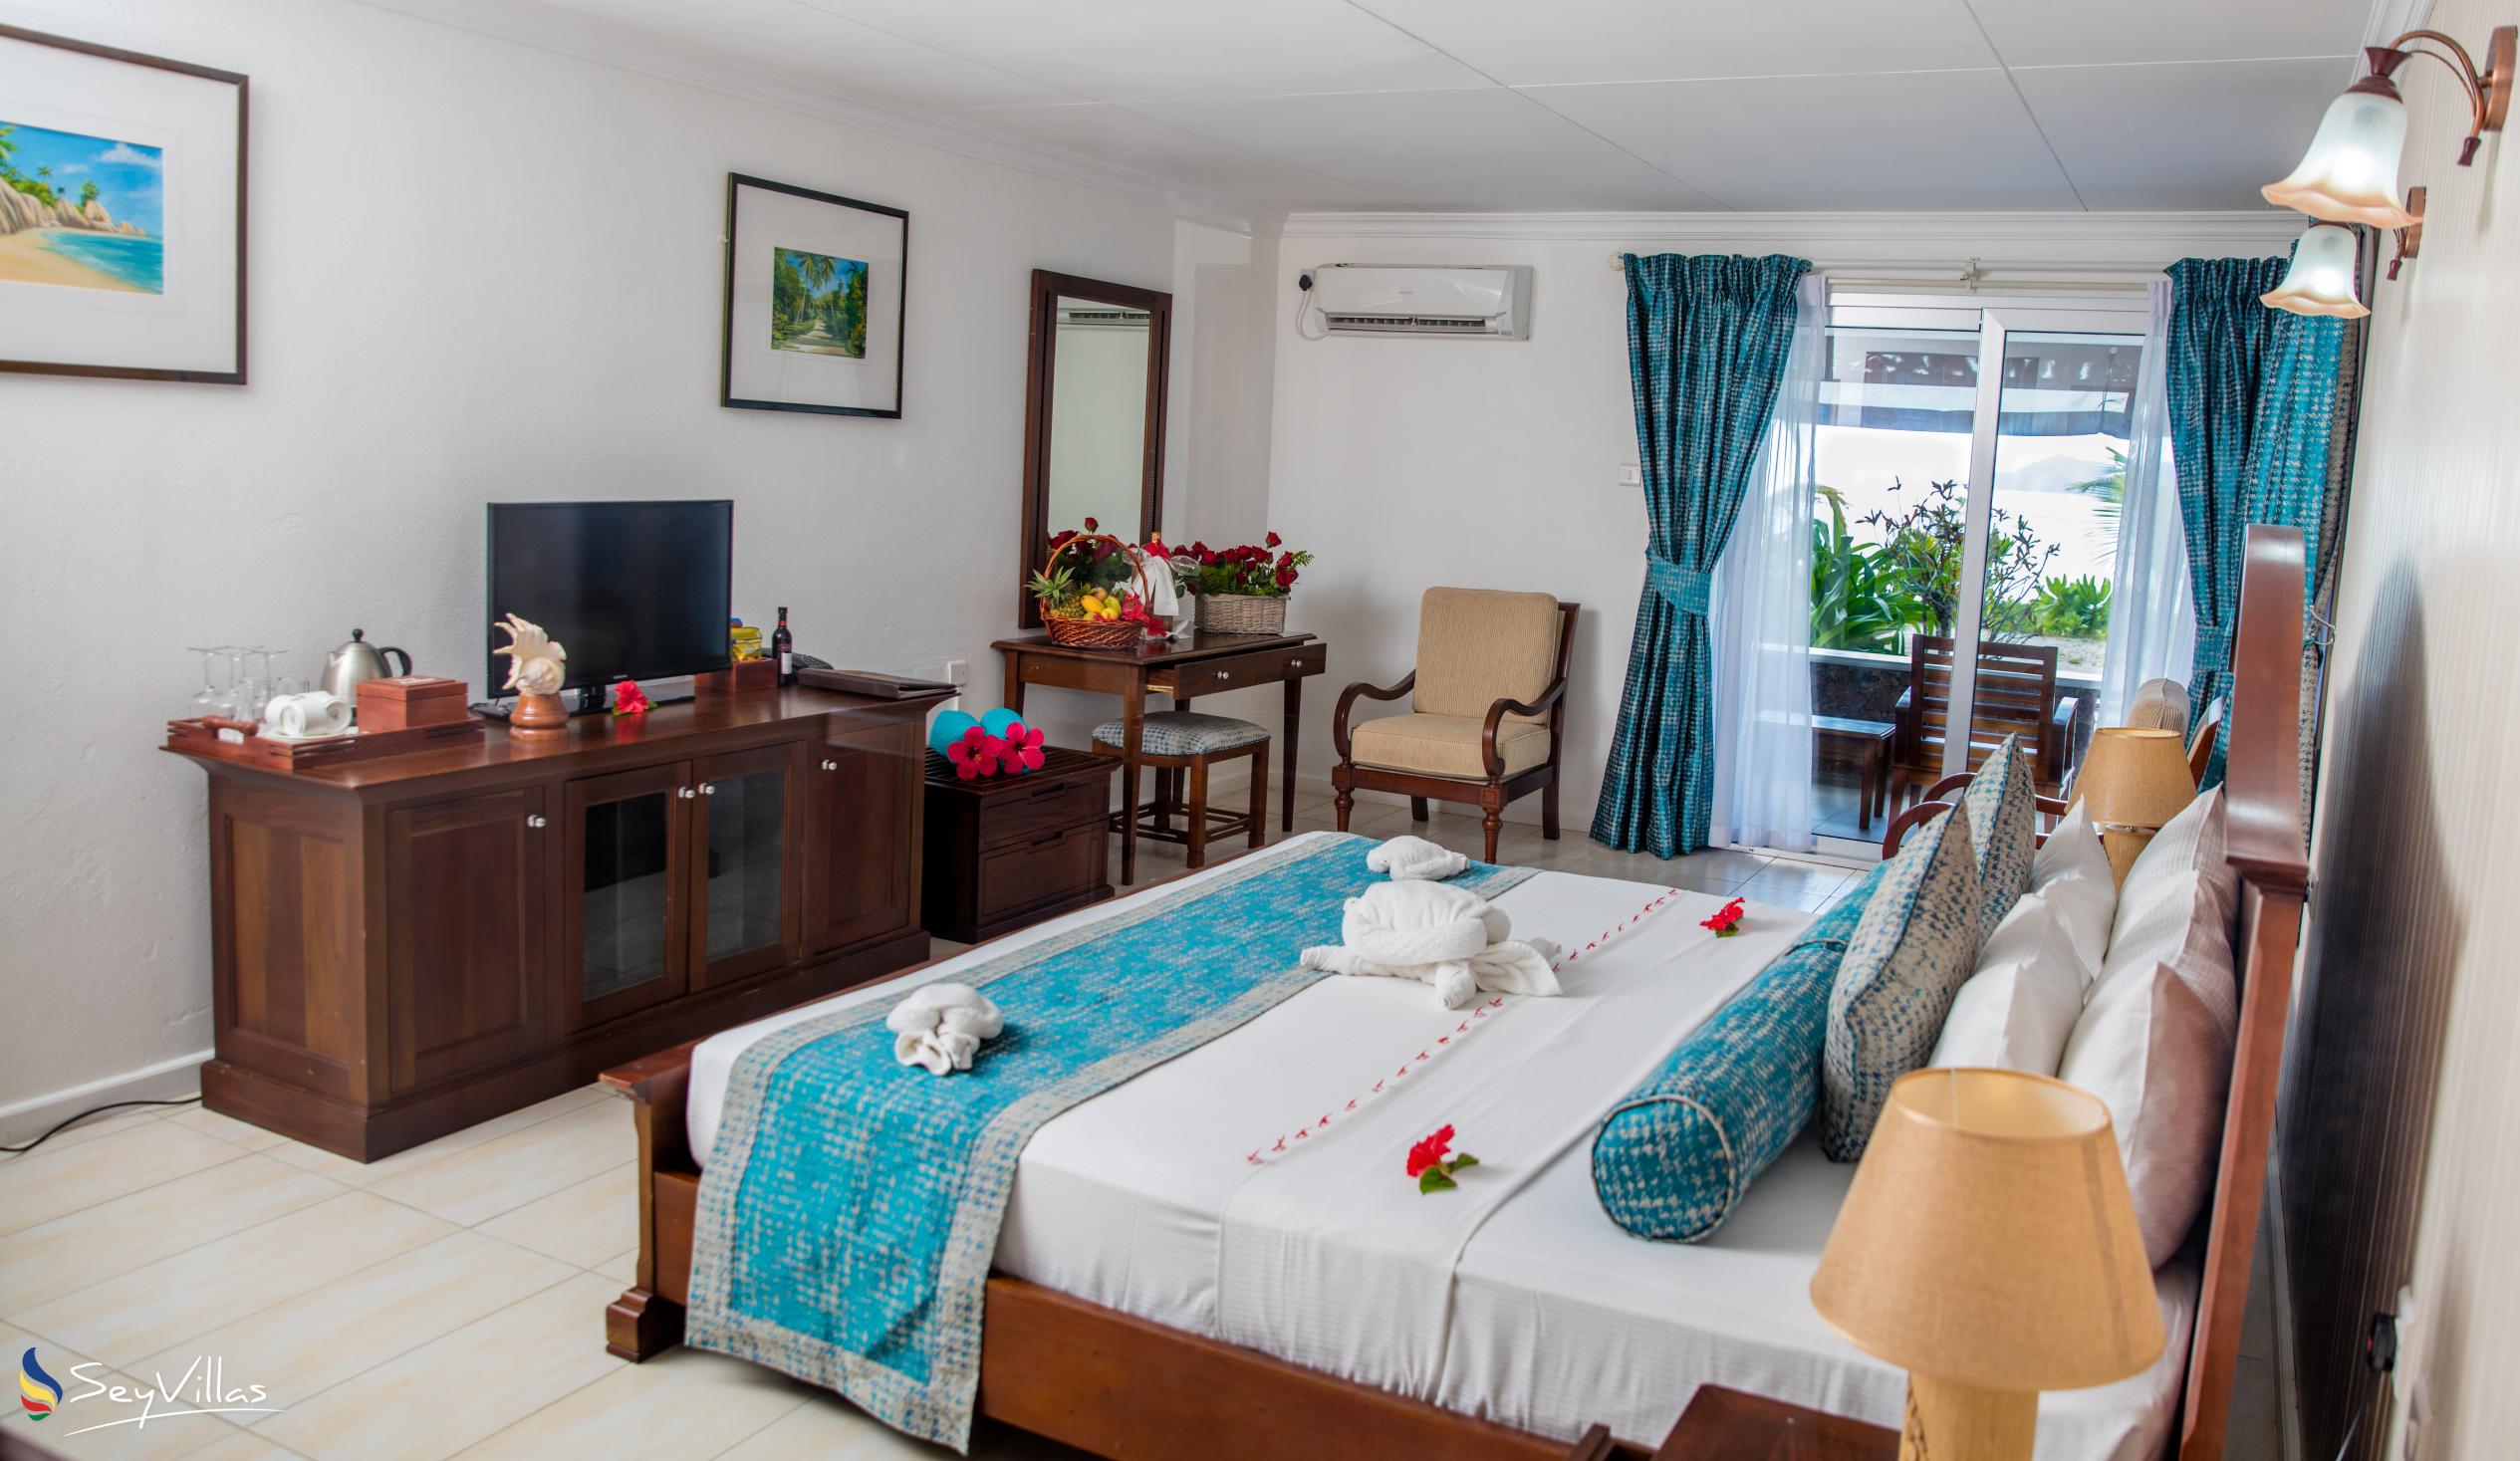 Photo 113: La Digue Island Lodge - 2-Bedroom Beach House Suite - La Digue (Seychelles)